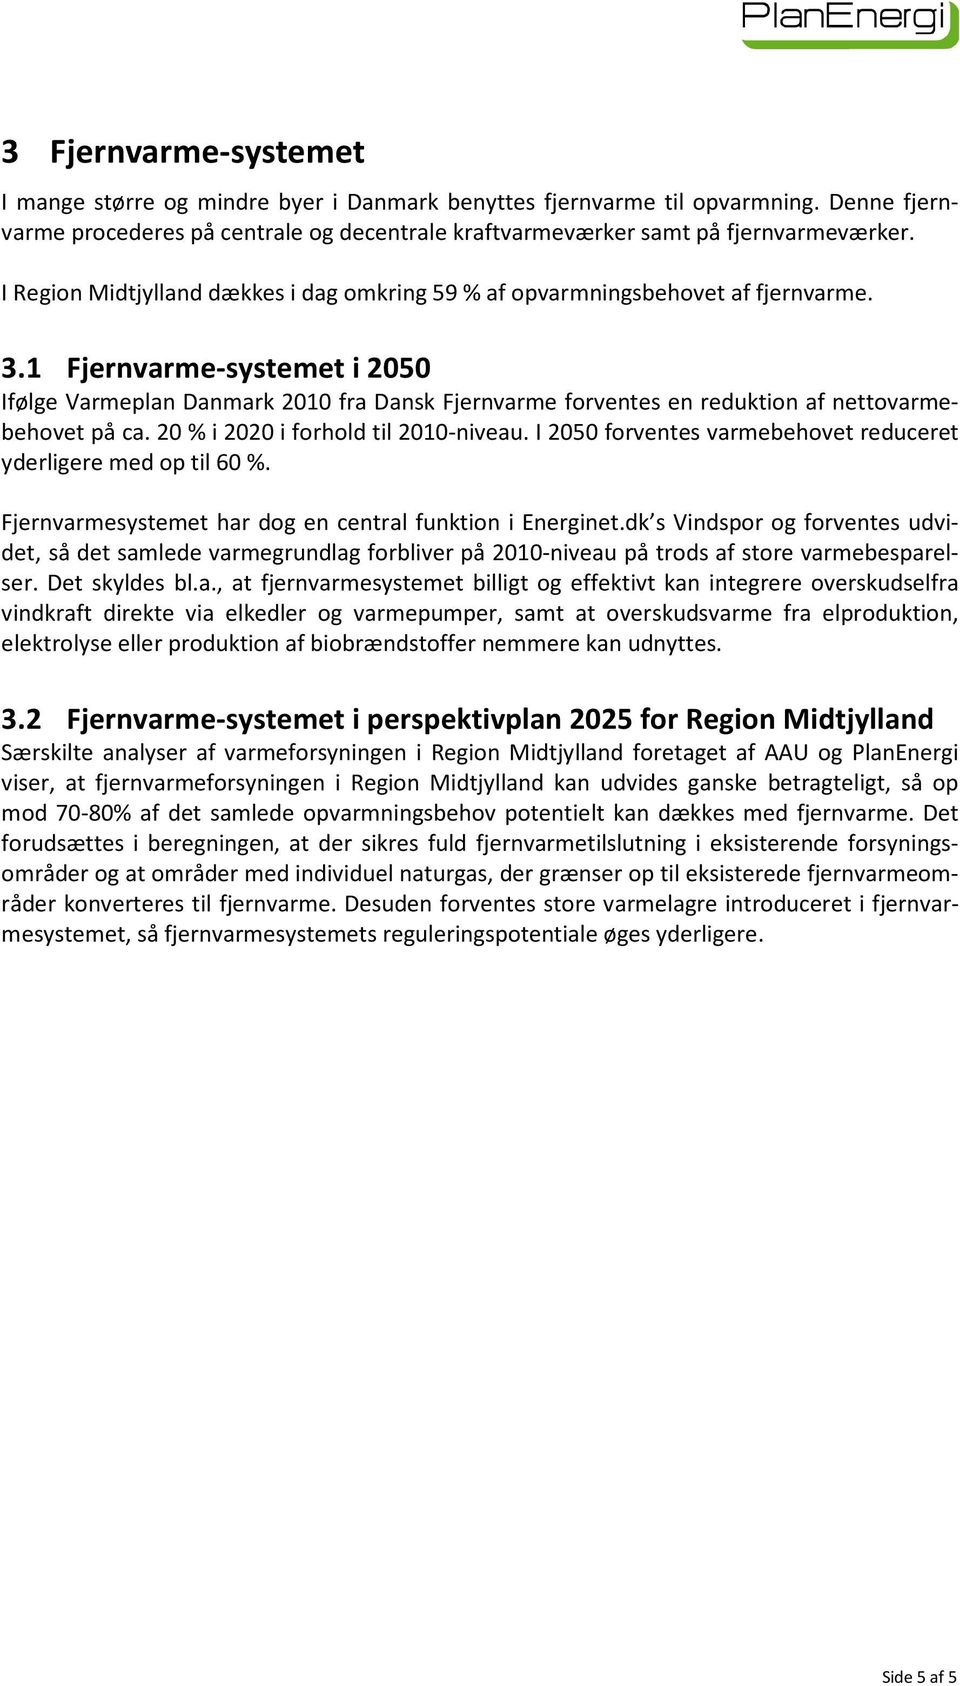 1 Fjernvarme-systemet i 2050 Ifølge Varmeplan Danmark 2010 fra Dansk Fjernvarme forventes en reduktion af nettovarmebehovet på ca. 20 % i 2020 i forhold til 2010-niveau.